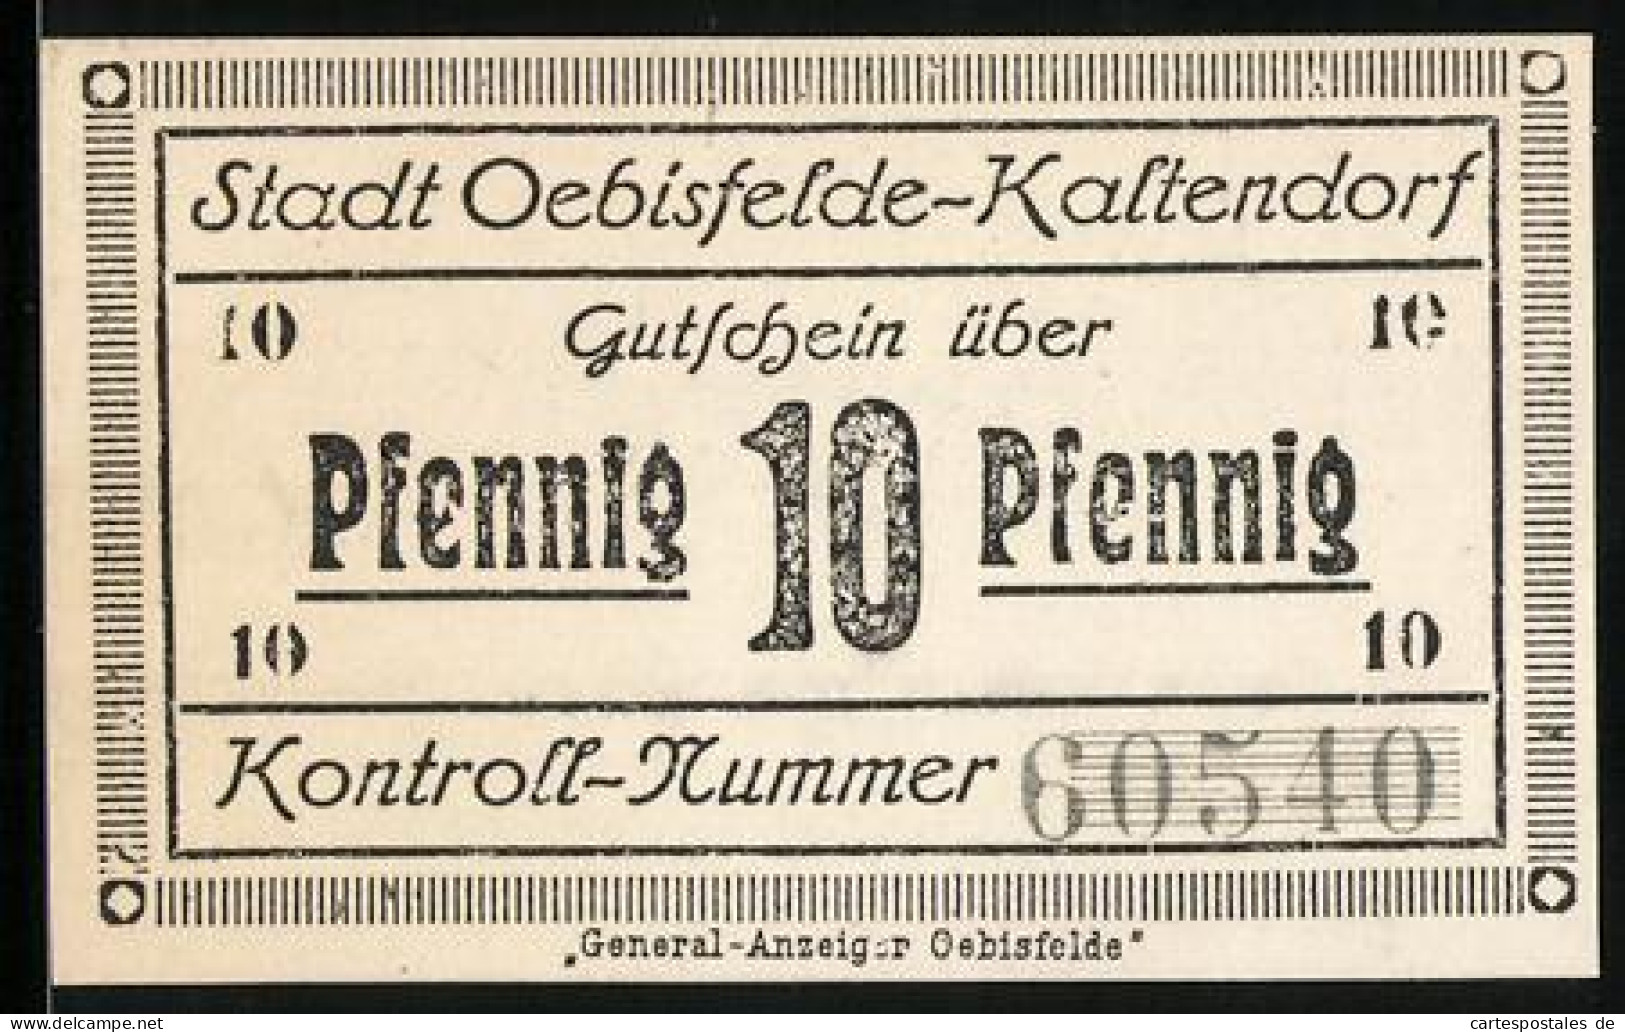 Notgeld Oebisfelde-Kaltendorf, 10 Pfennig, General-Anzeiger Oebisfelde U. Kontroll-Nummer, Stempel Mit Eule, Gutschein  - [11] Local Banknote Issues